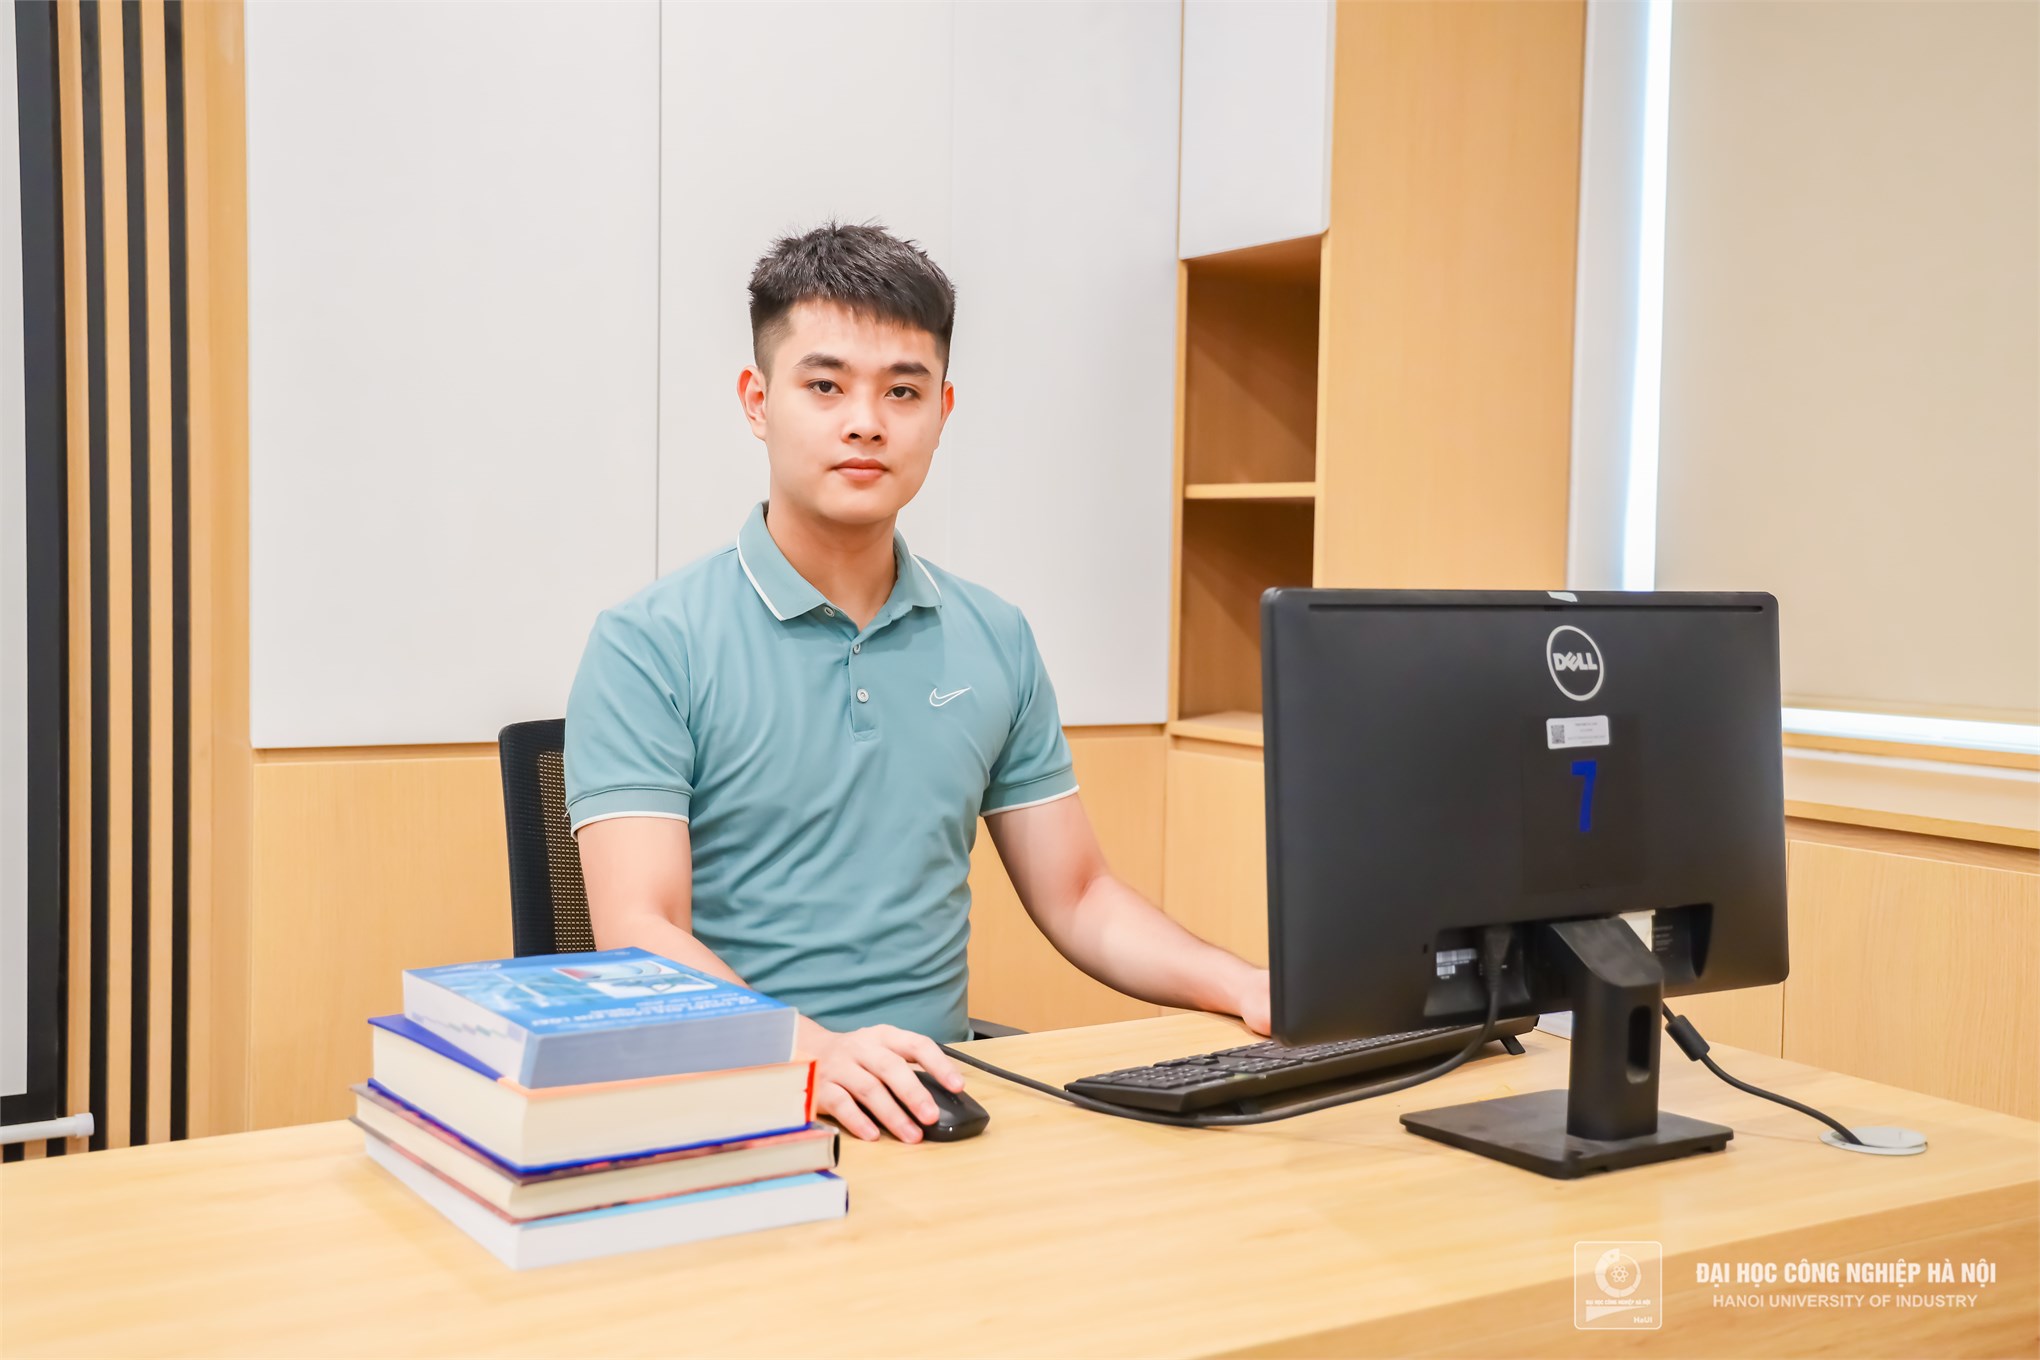 Thủ khoa ngành Công nghệ kỹ thuật điều khiển và tự động hóa, Đại học Công nghiệp Hà Nội có thành tích nghiên cứu khoa học và công bố quốc tế ấn tượng